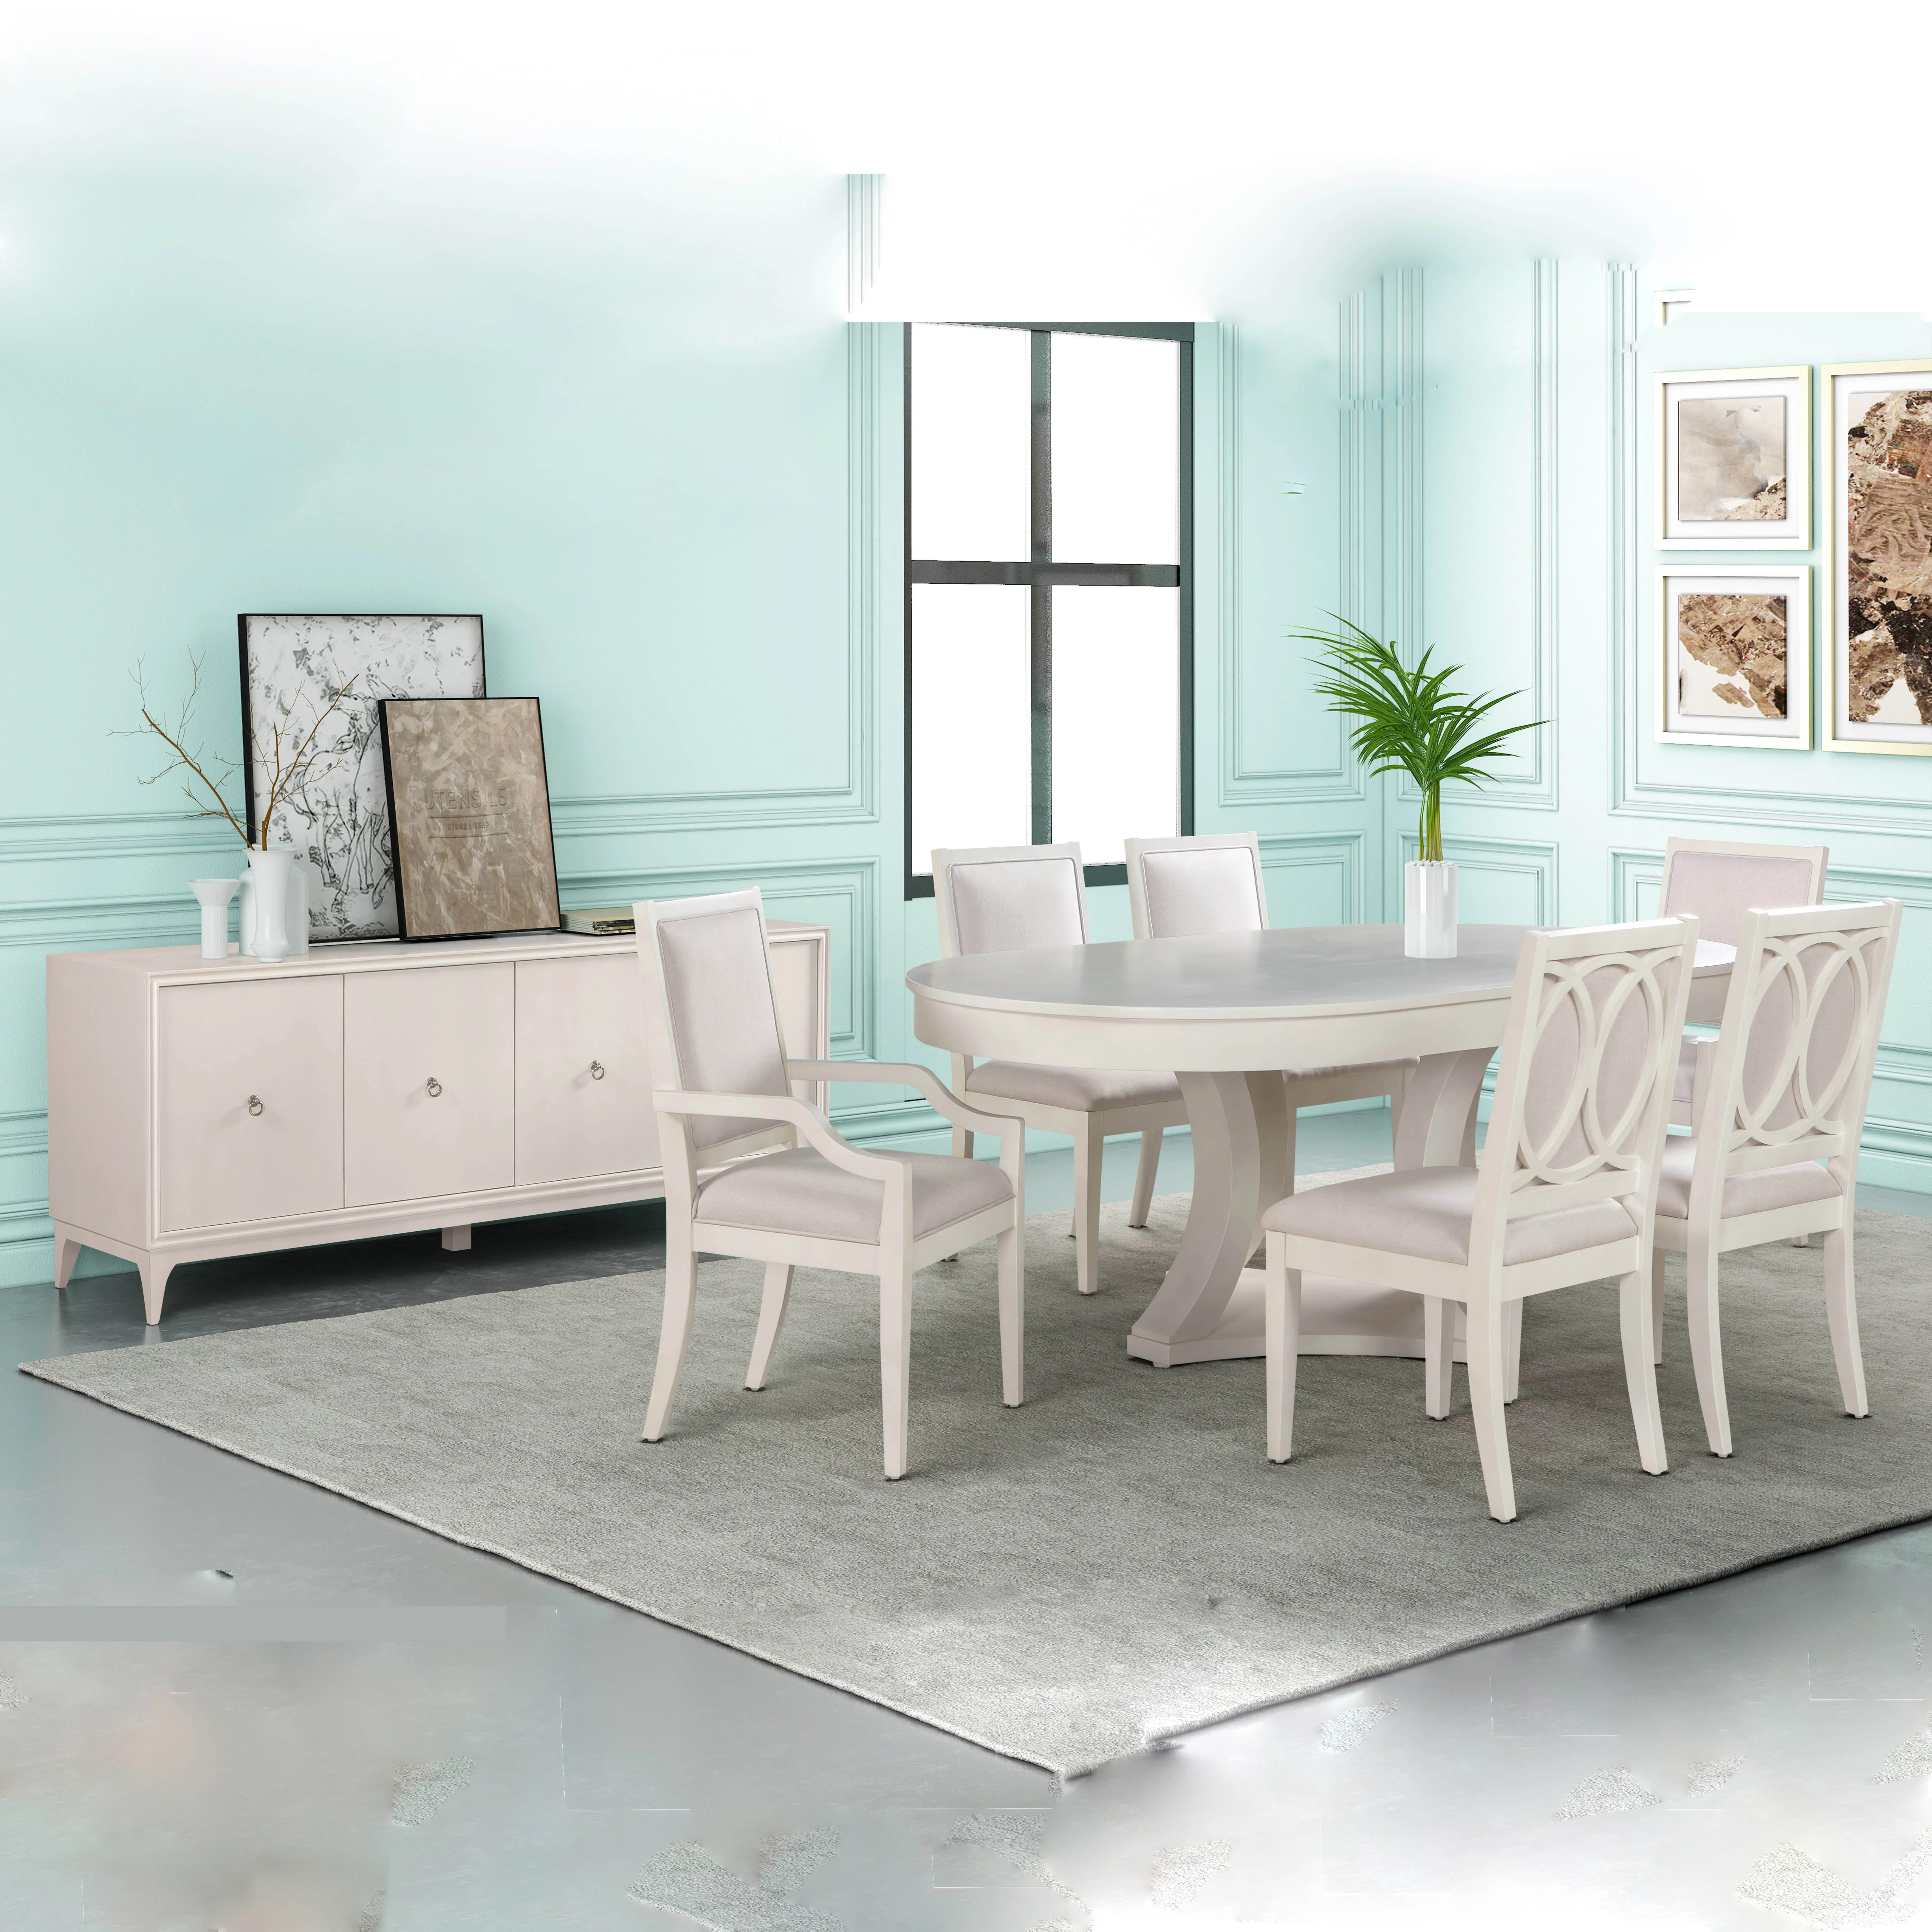 Großhandels preis Wohn möbel Top Qualität Luxus Holz Esszimmer 6 Stühle Tische